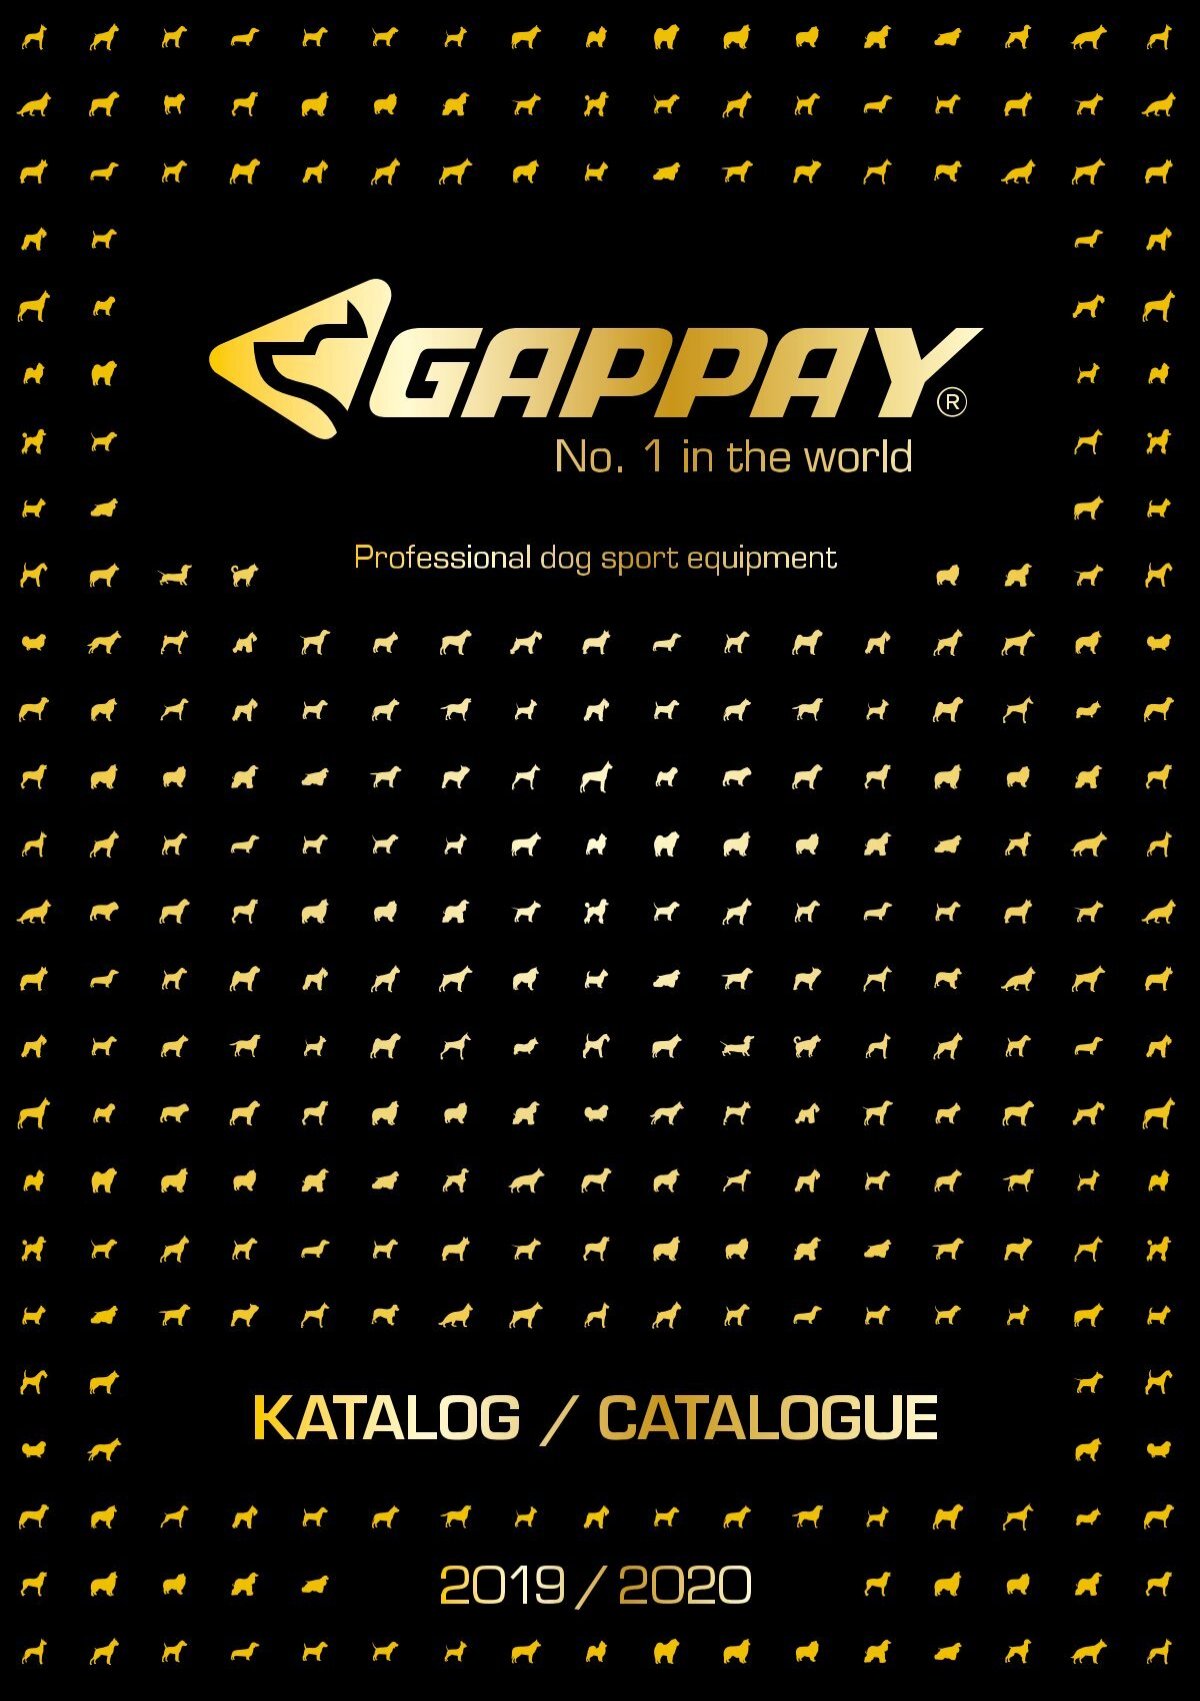 Gappay Katalog 2019/2020